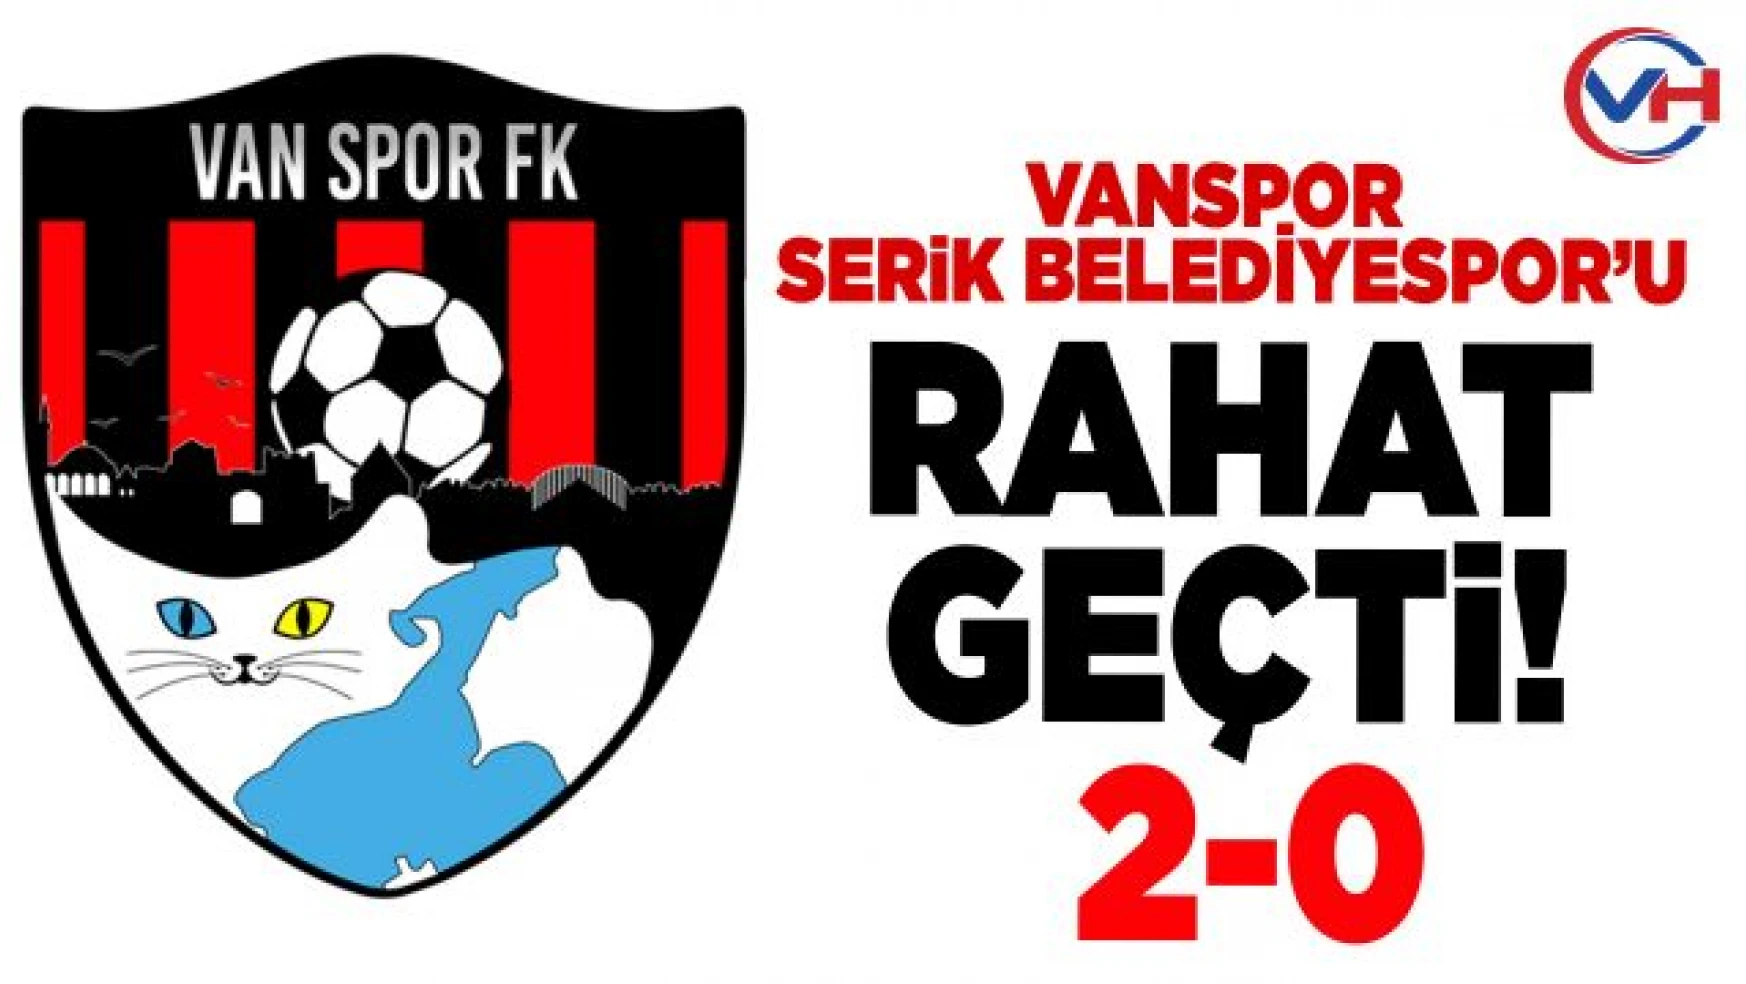 Vanspor FK, Serikbelediyespor'u 2-0 mağlup etti